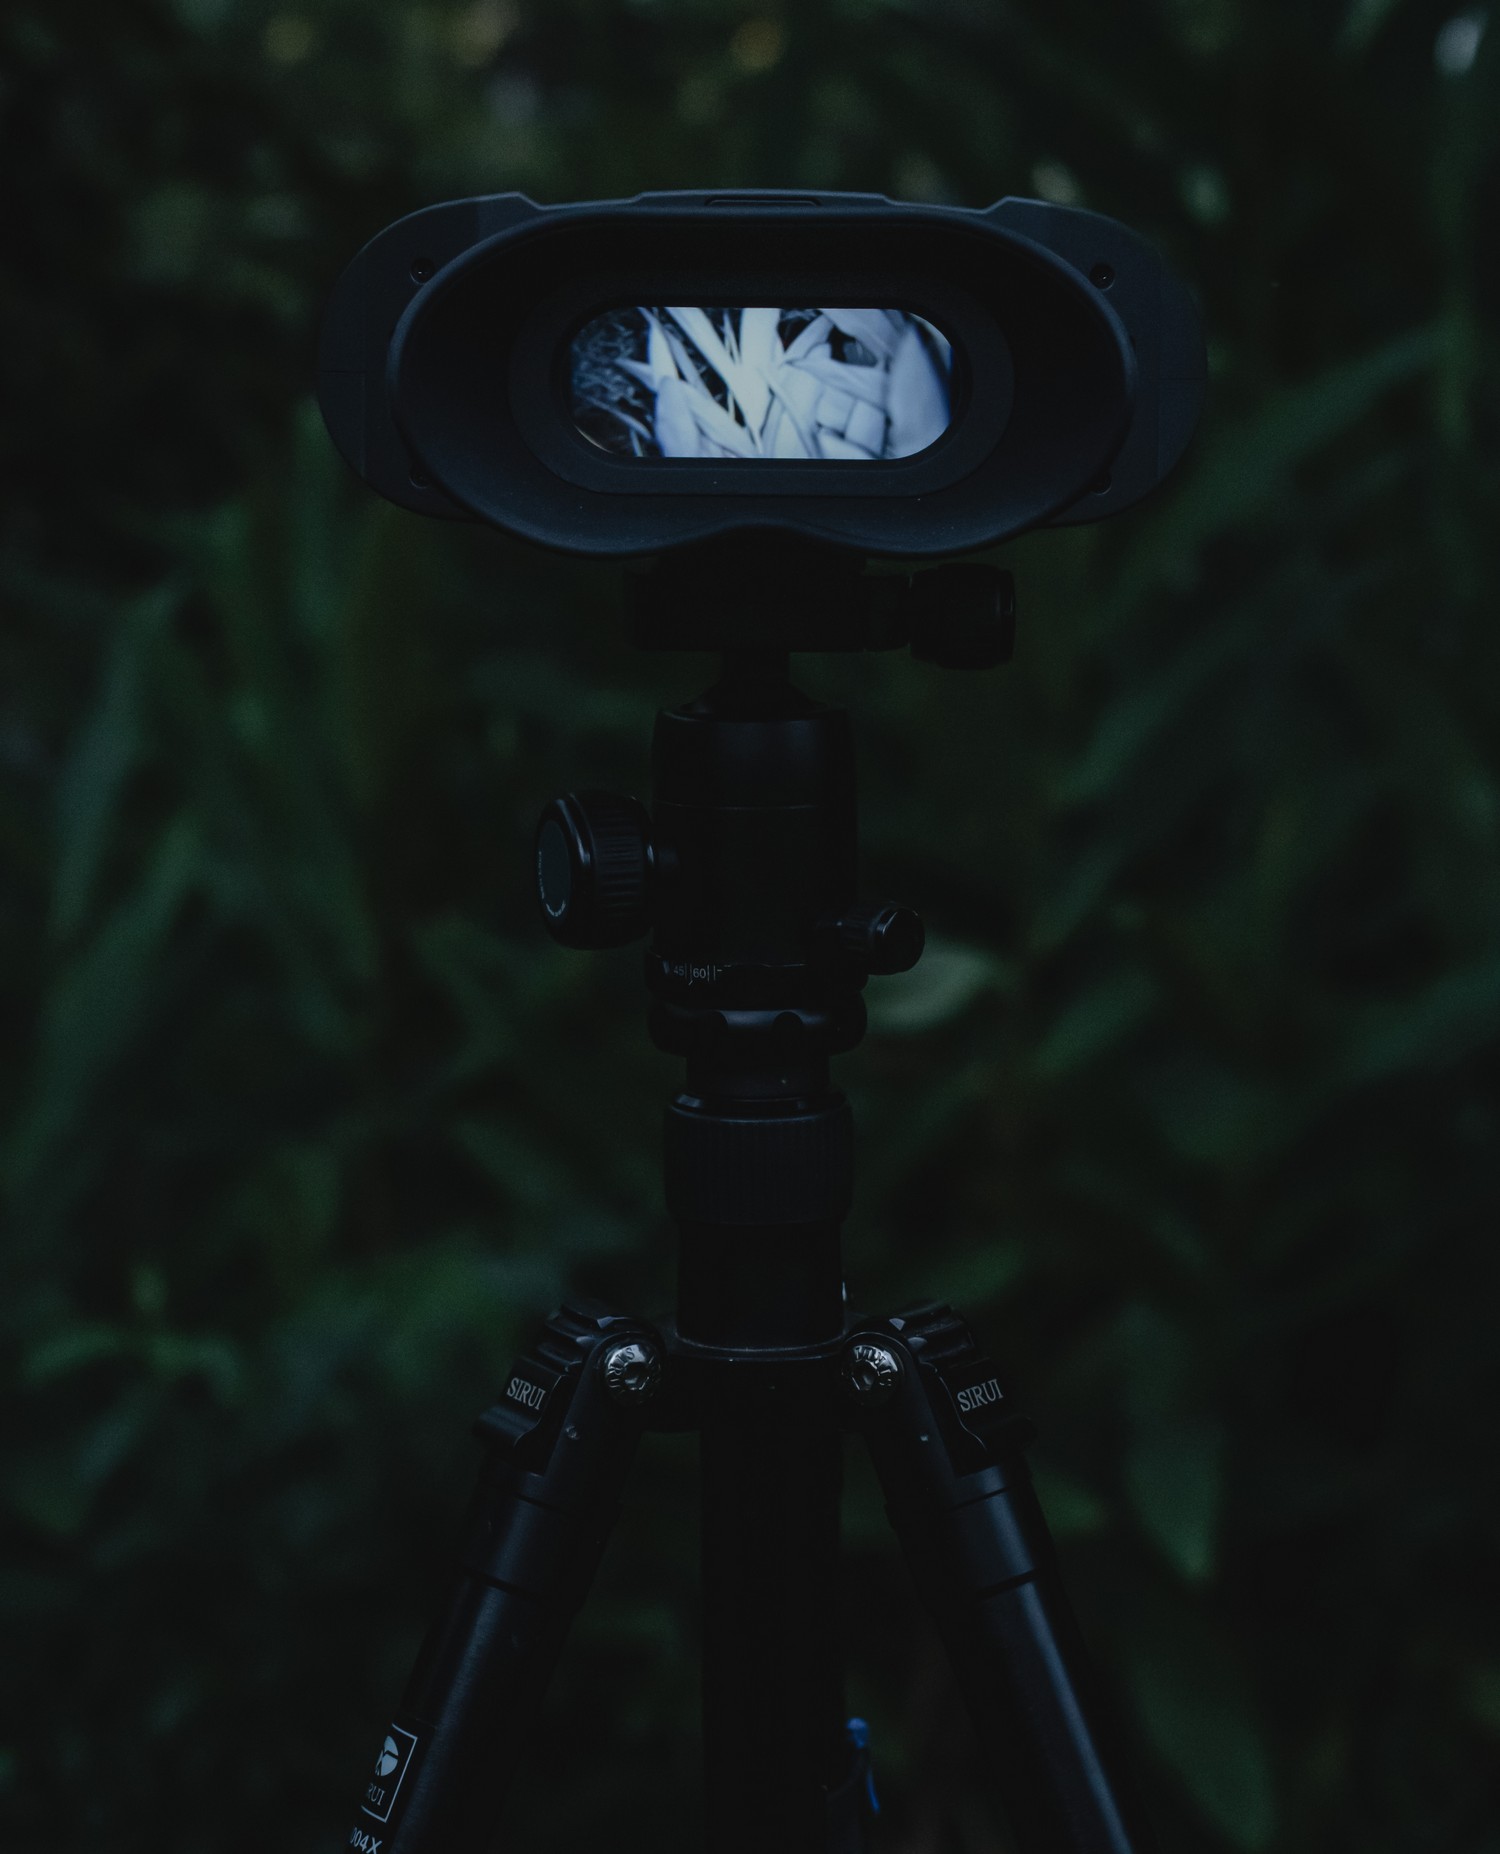 nočni vid NVB 200 - Samodejni preklop med dnevnim in nočnim dvojnim načinom